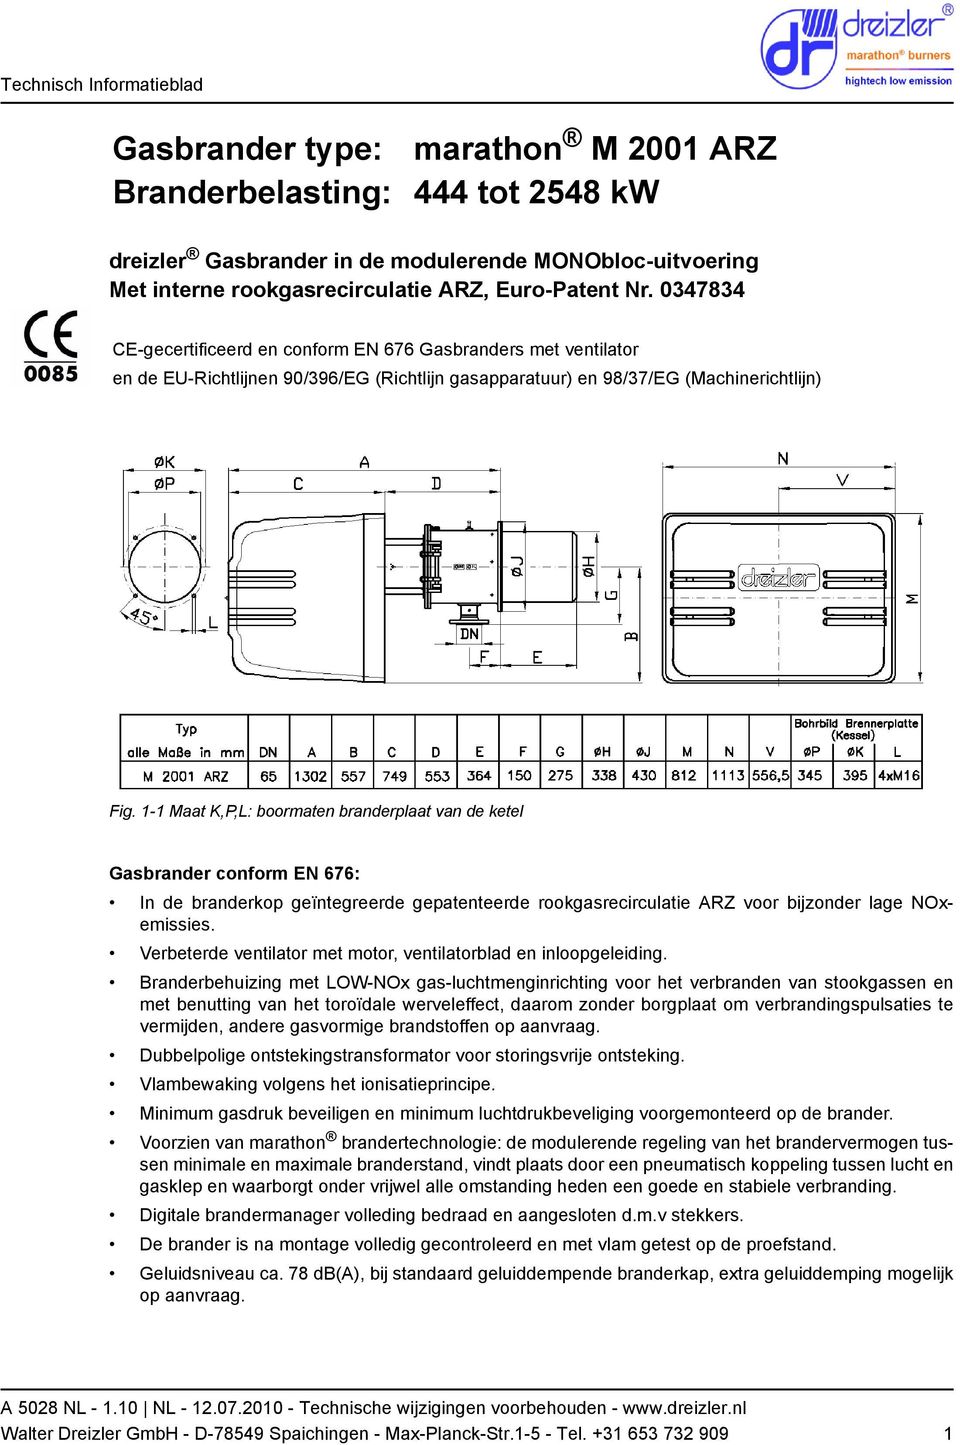 1-1 Maat K,P,L: boormaten branderplaat van de ketel Gasbrander conform EN 676: In de branderkop geïntegreerde gepatenteerde rookgasrecirculatie ARZ voor bijzonder lage NOxemissies.